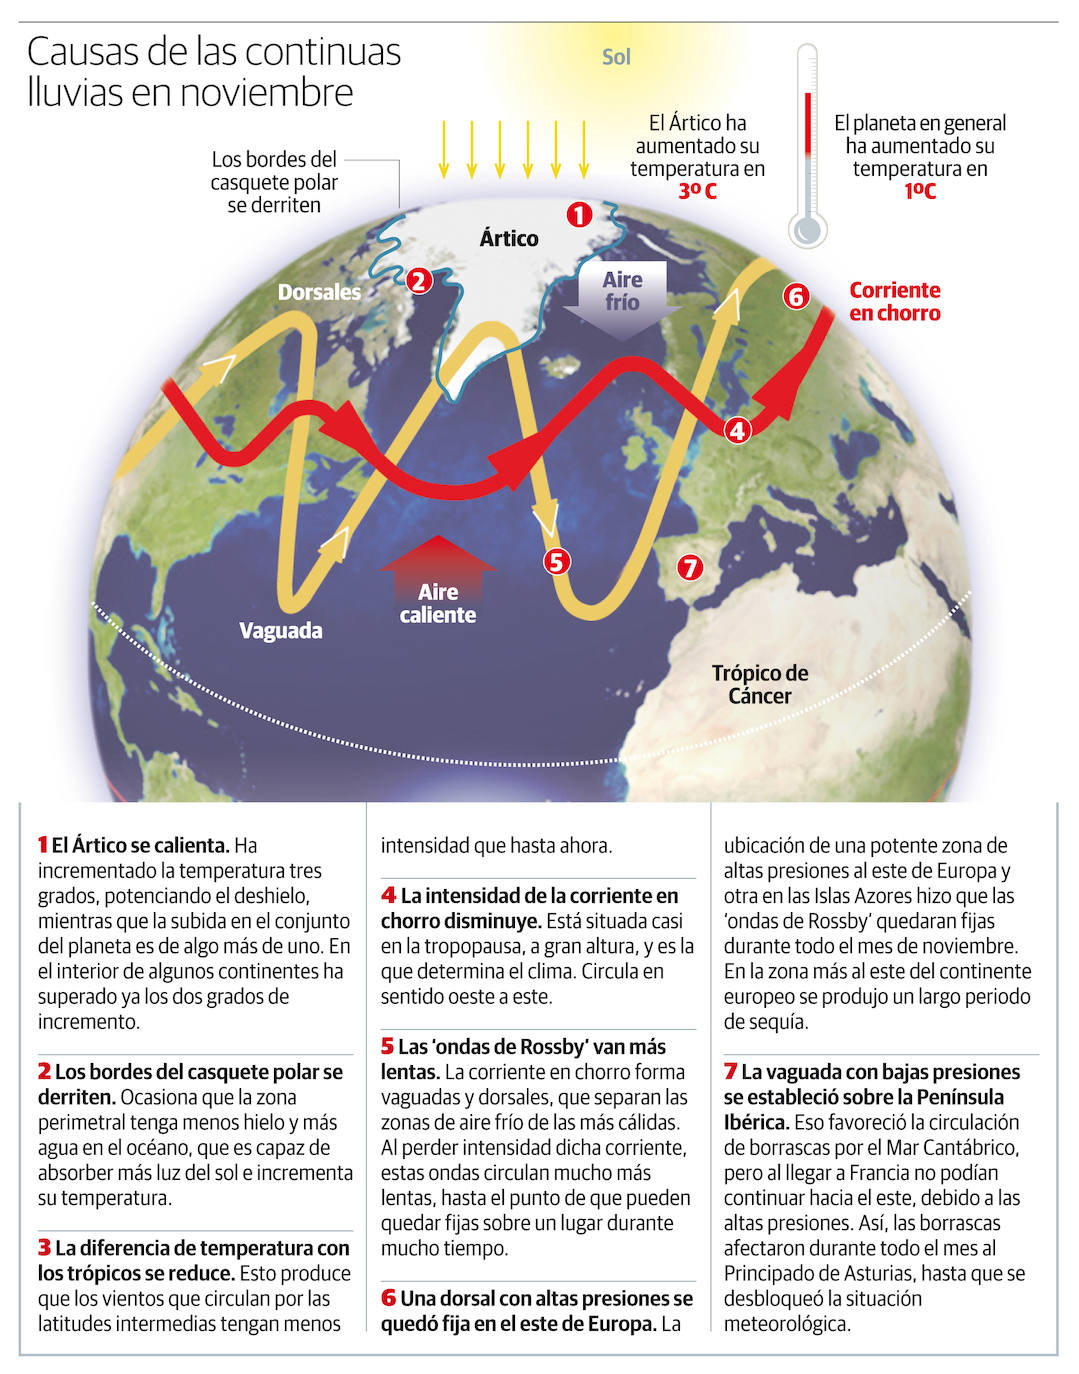 Meteorología atribuye la cadena de temporales en Asturias al aumento del deshielo del casquete polar ártico